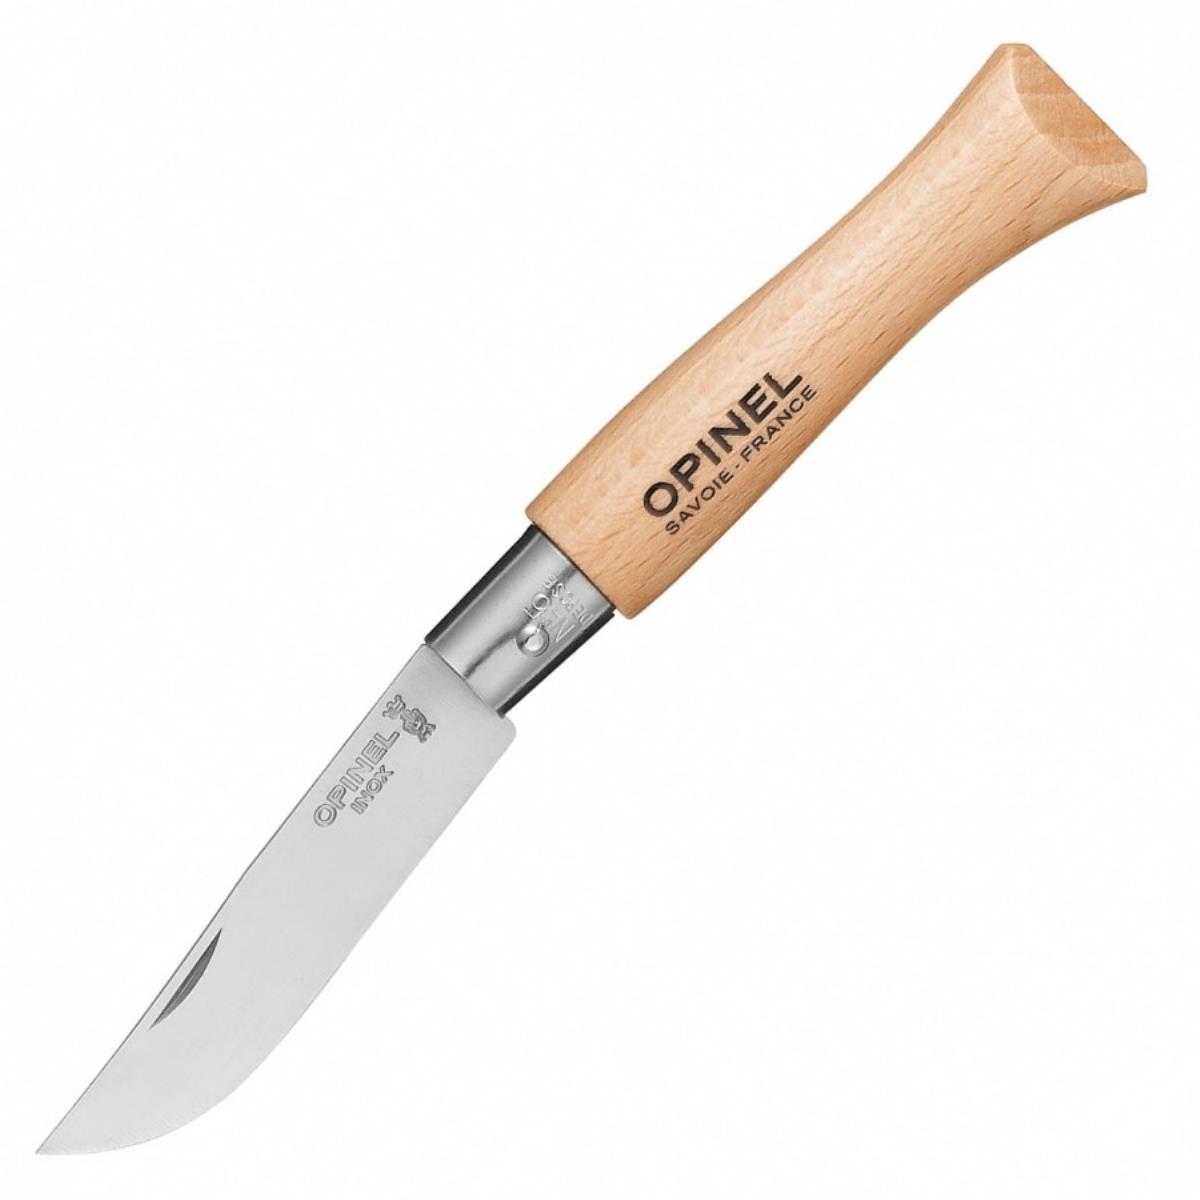 Нож №5 VRI Tradition Inox (нержавеющая сталь, рукоять бук, длина клинка 6 см) 0010729 OPINEL складной нож kershaw camshaft сталь 4cr14mov рукоять нейлон